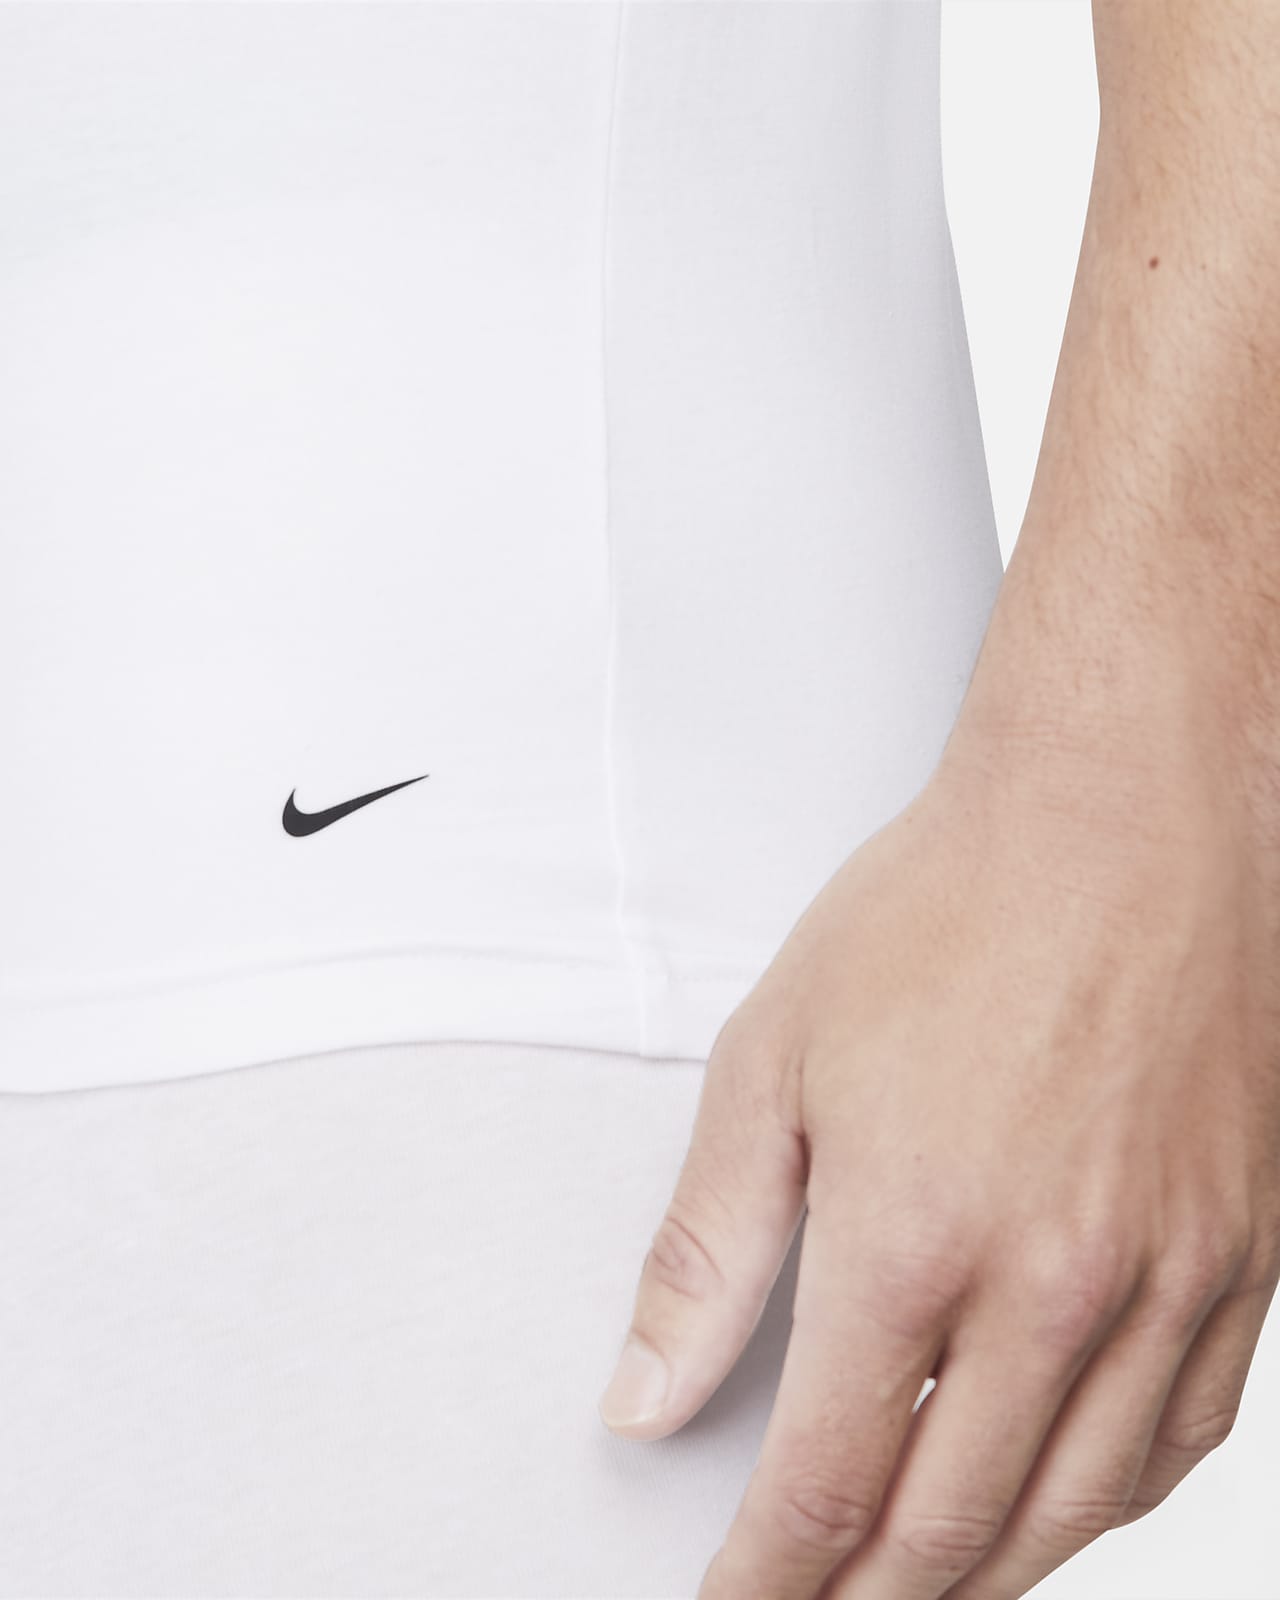 T-shirt manches courtes Nike Dri-FIT - Vert Pétrole - DZ2751-386